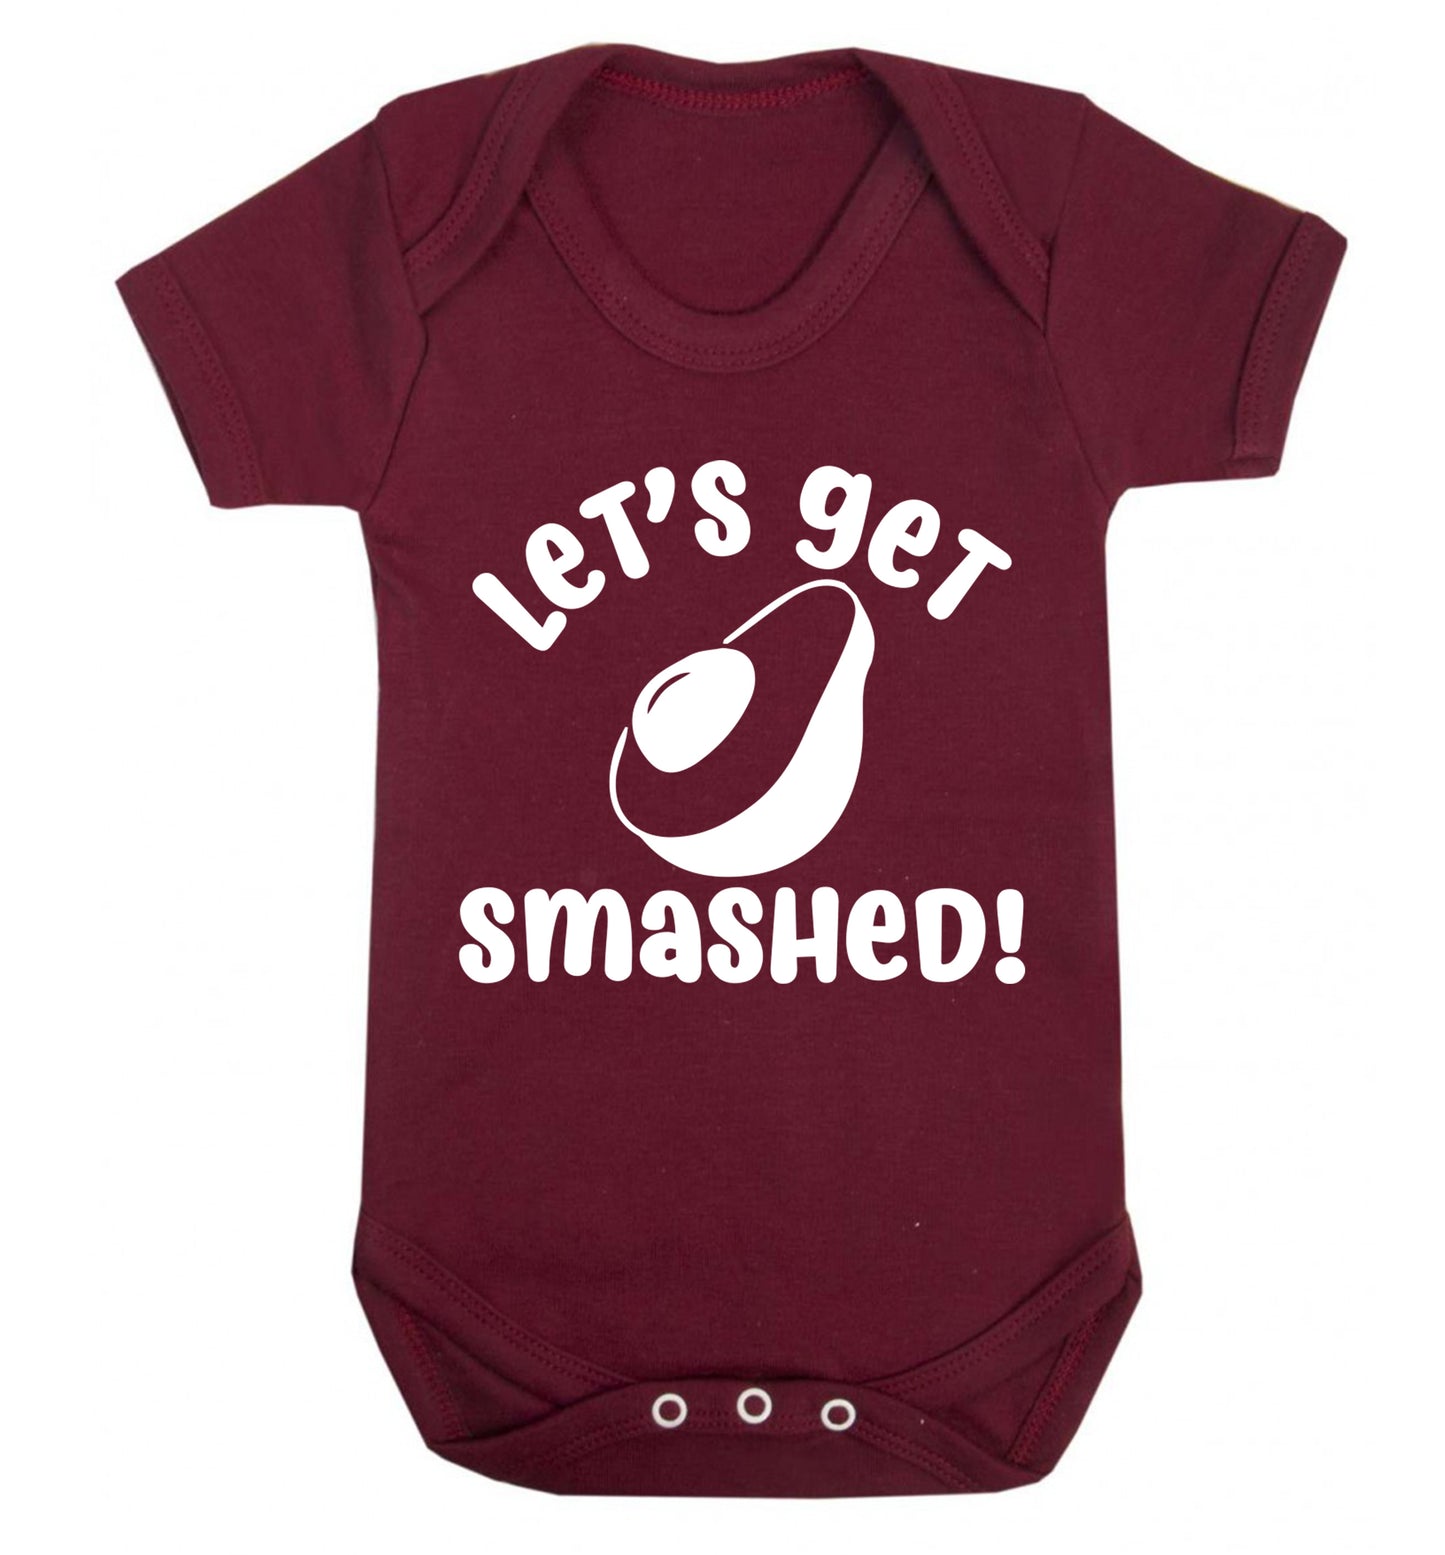 Let's get smashed Baby Vest maroon 18-24 months